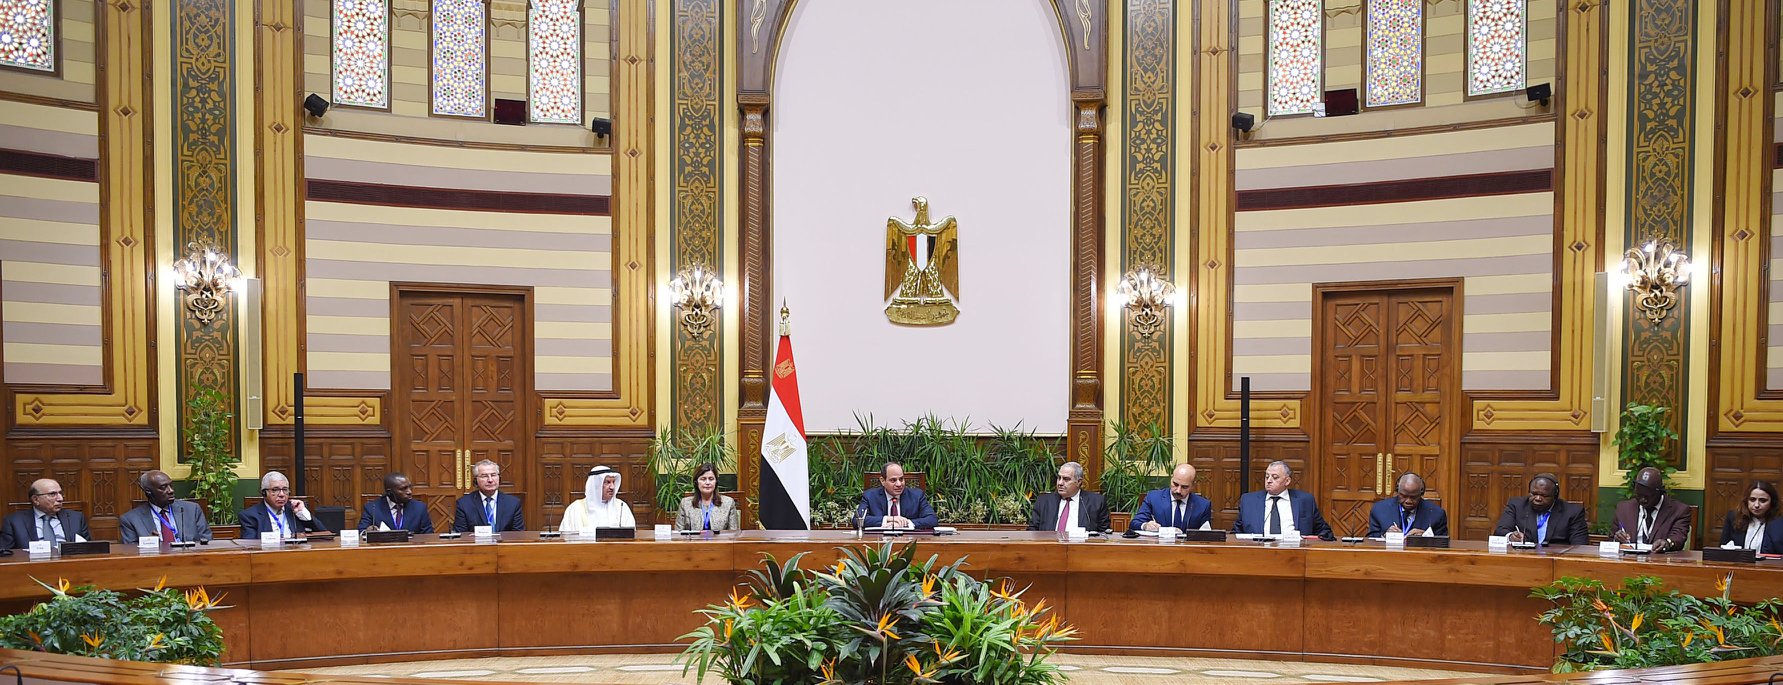 الرئيس عبد الفتاح السيسي مع رؤساء المحاكم الدستورية (2)